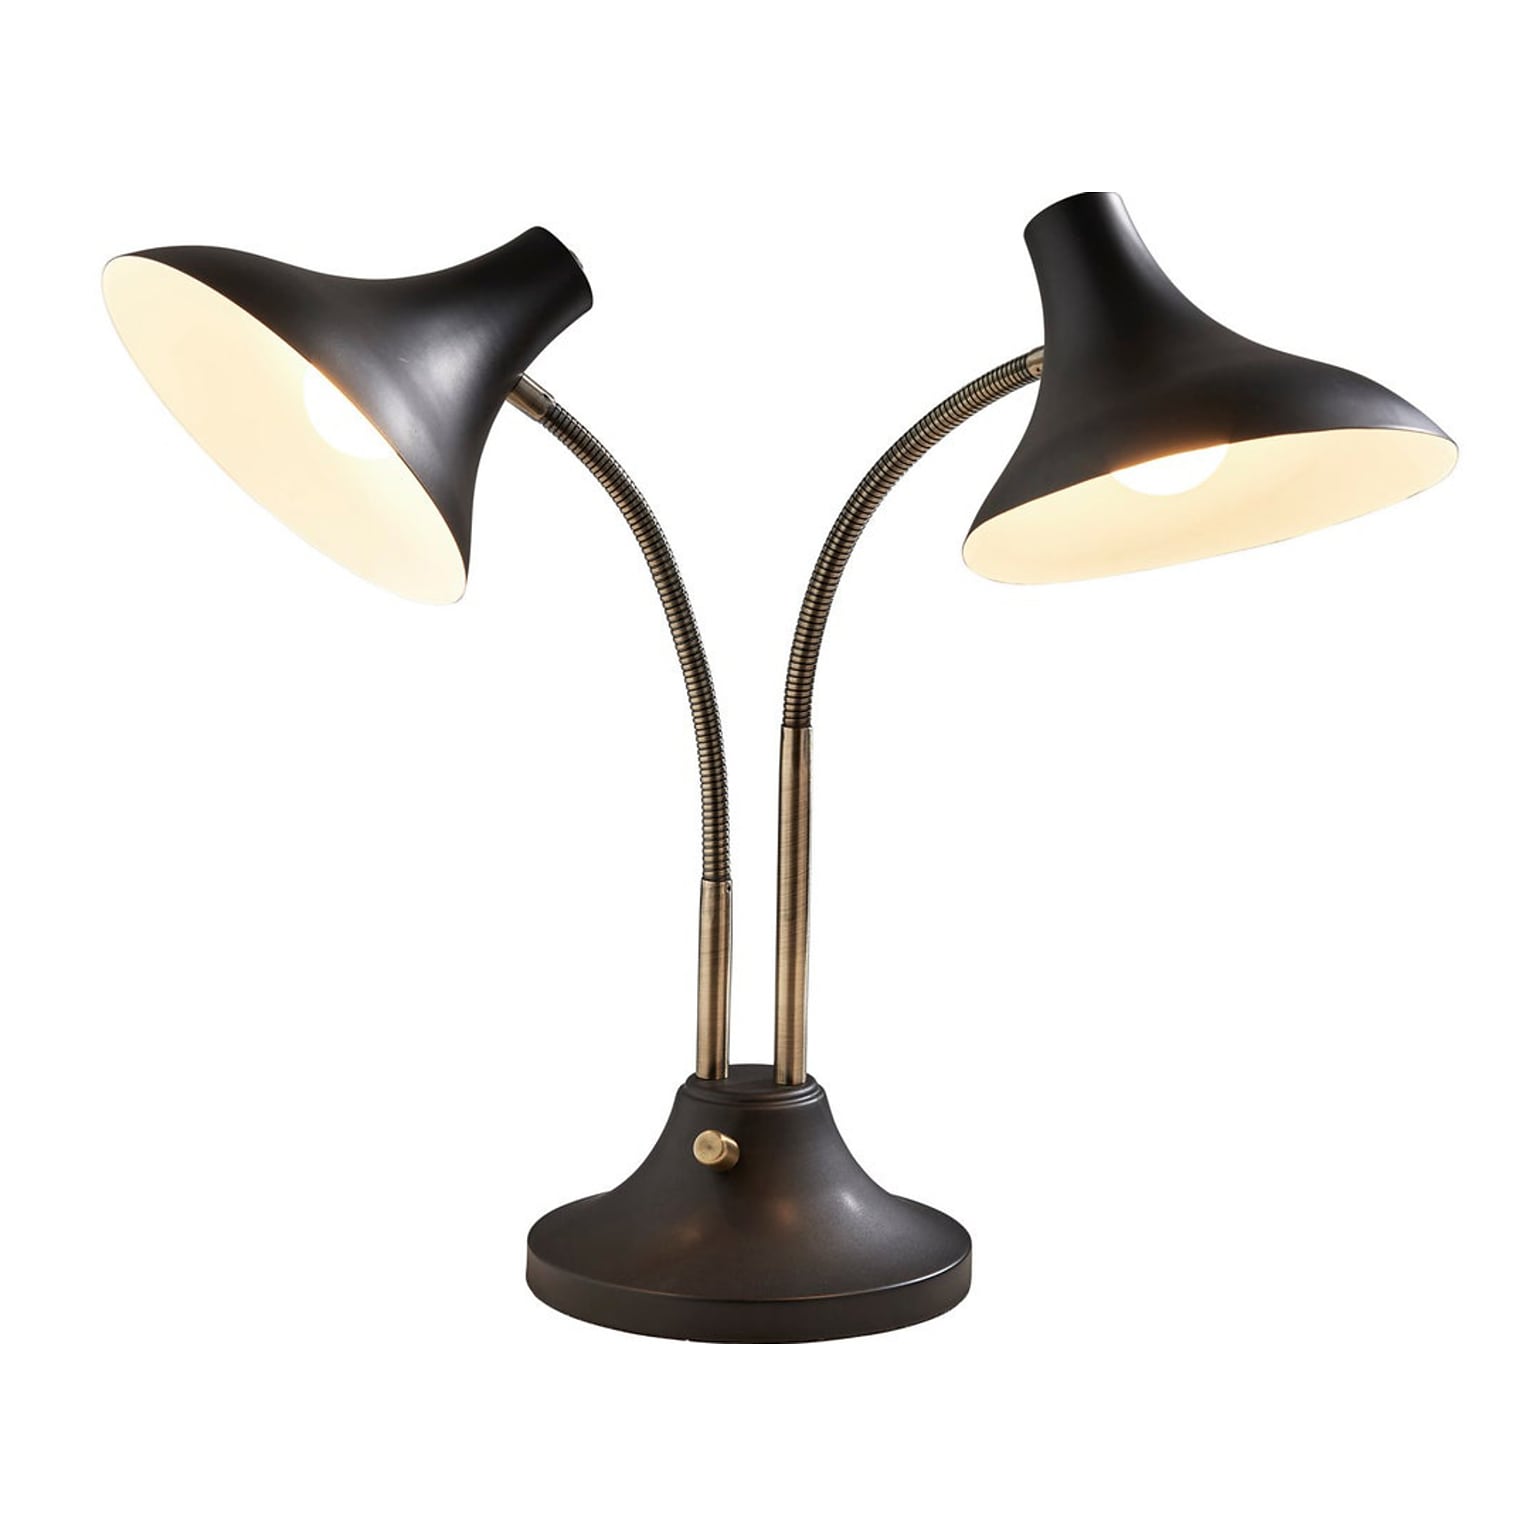 Adesso Ascot Incandescent Desk Lamp, 22.5, Black/Antique Brass (3371-01)